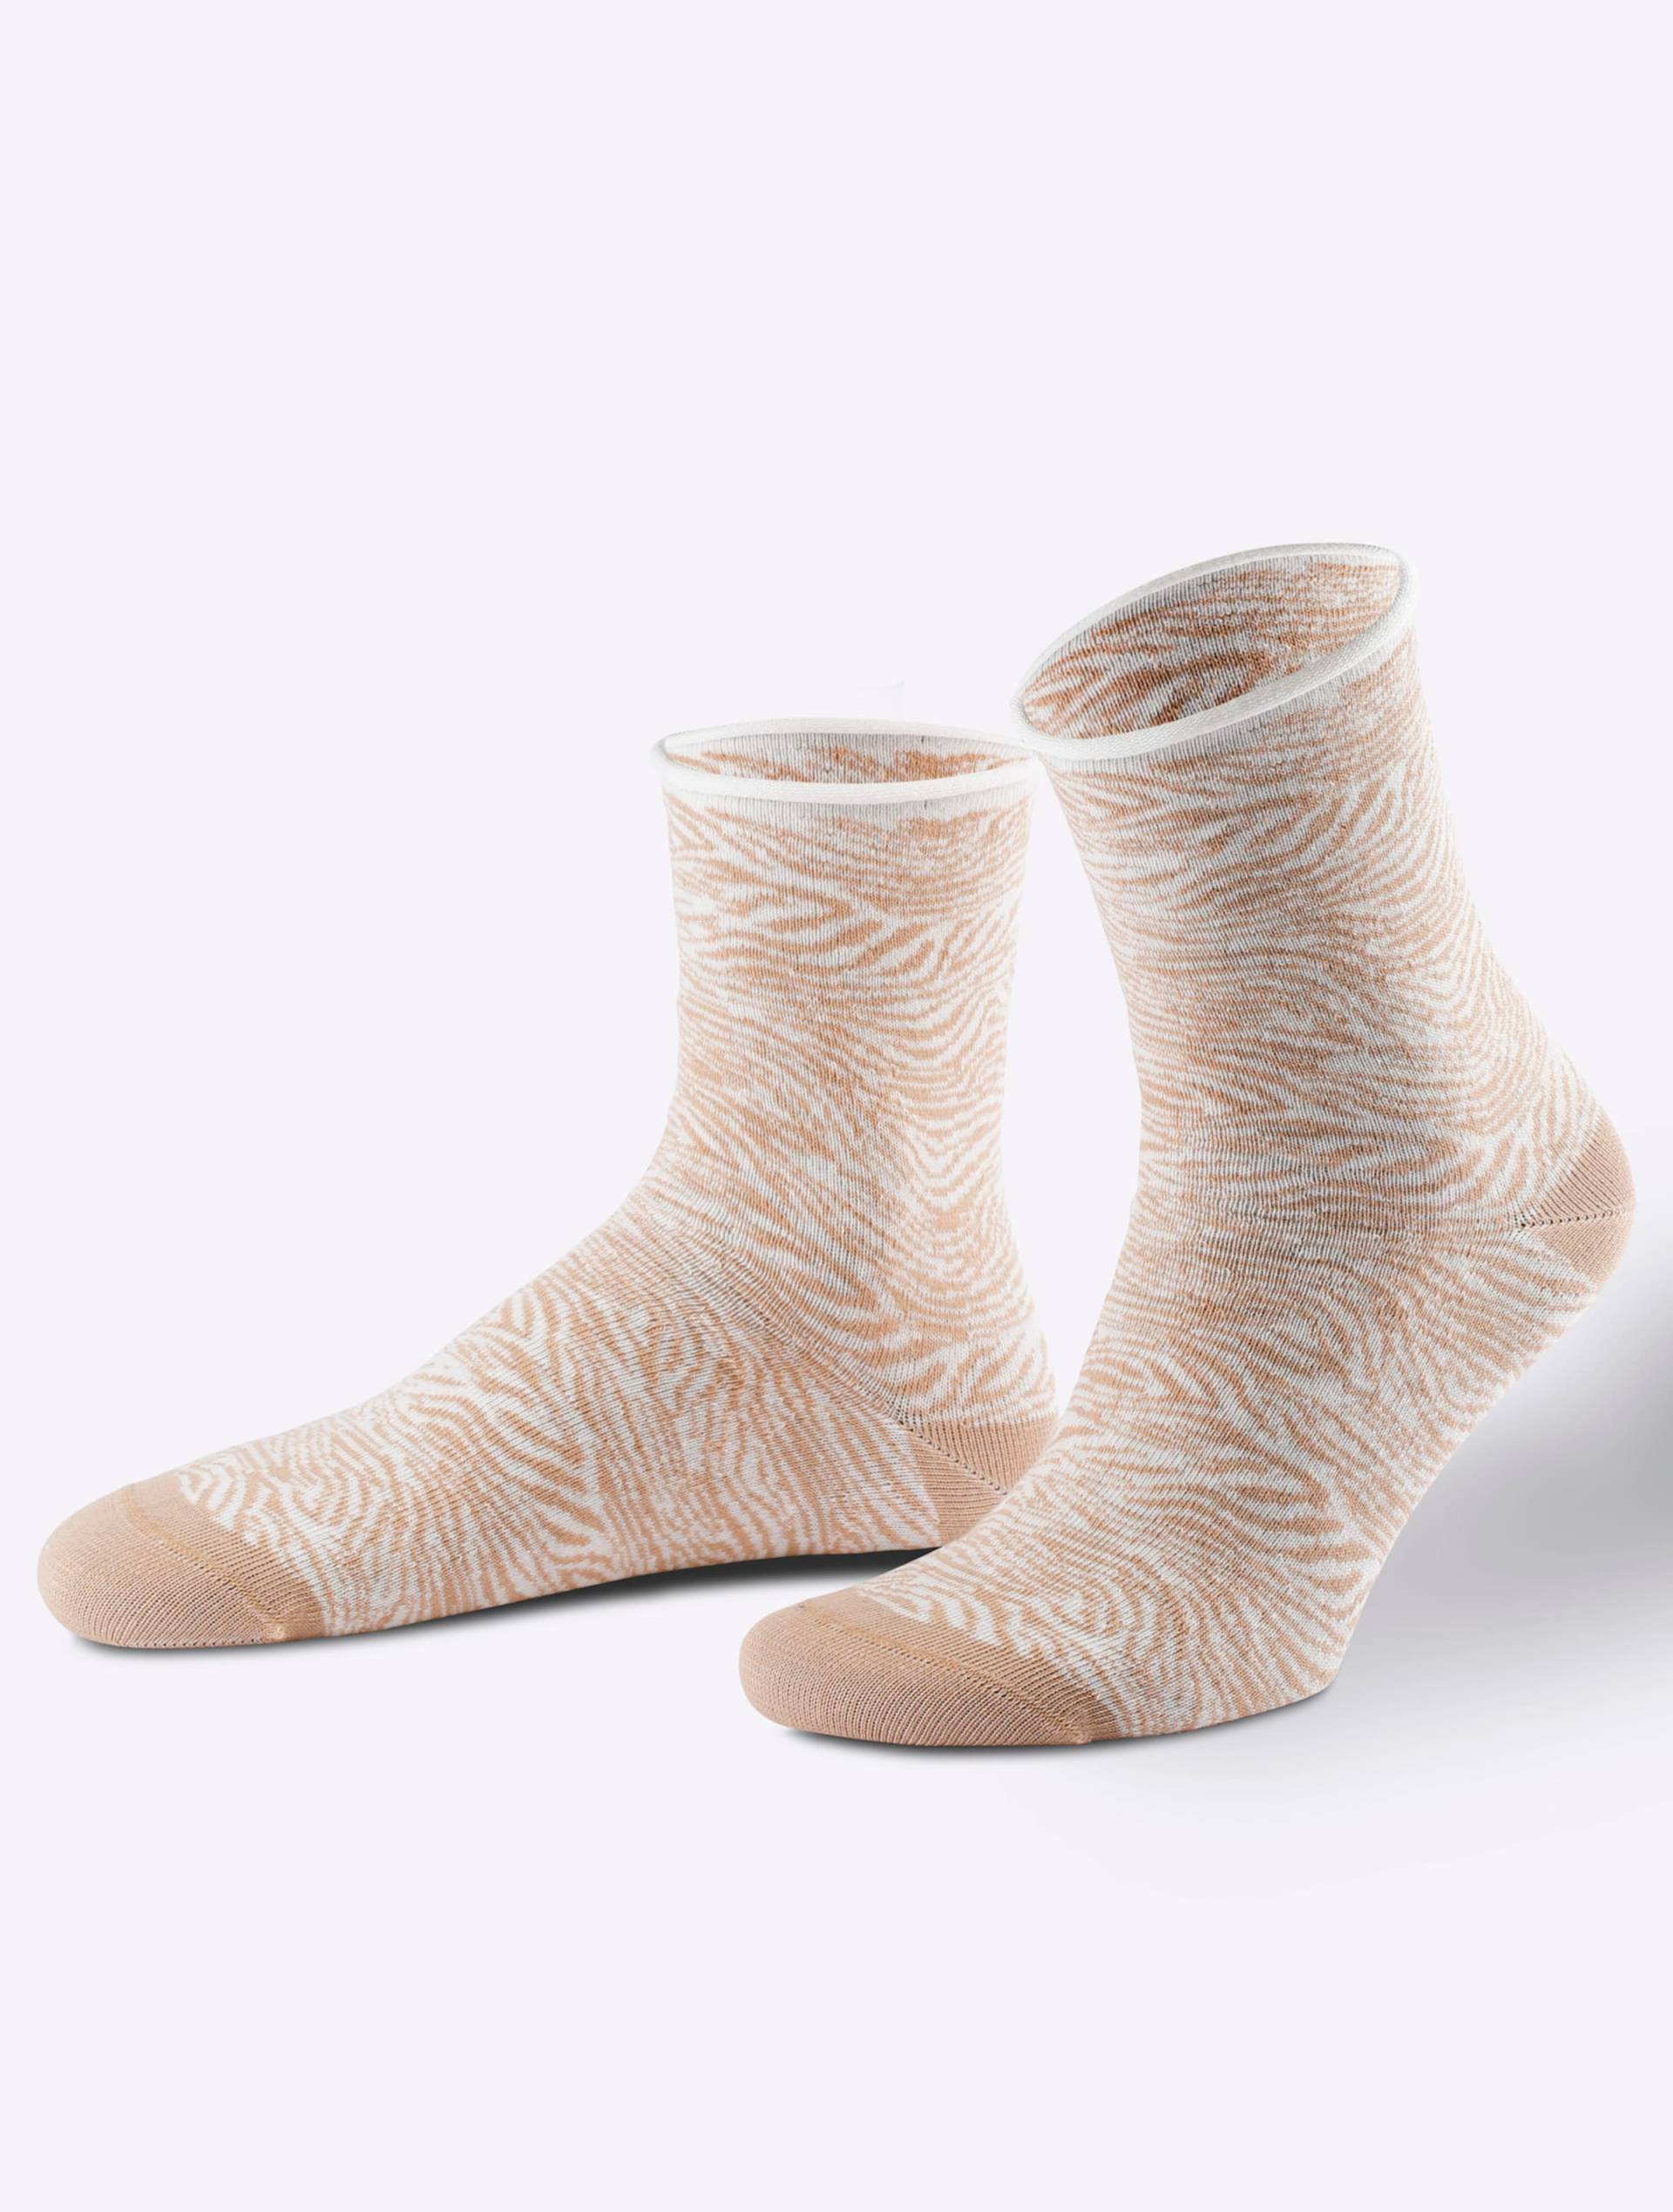 Damen-Socken in camel-gemustert von wäschepur von wäschepur